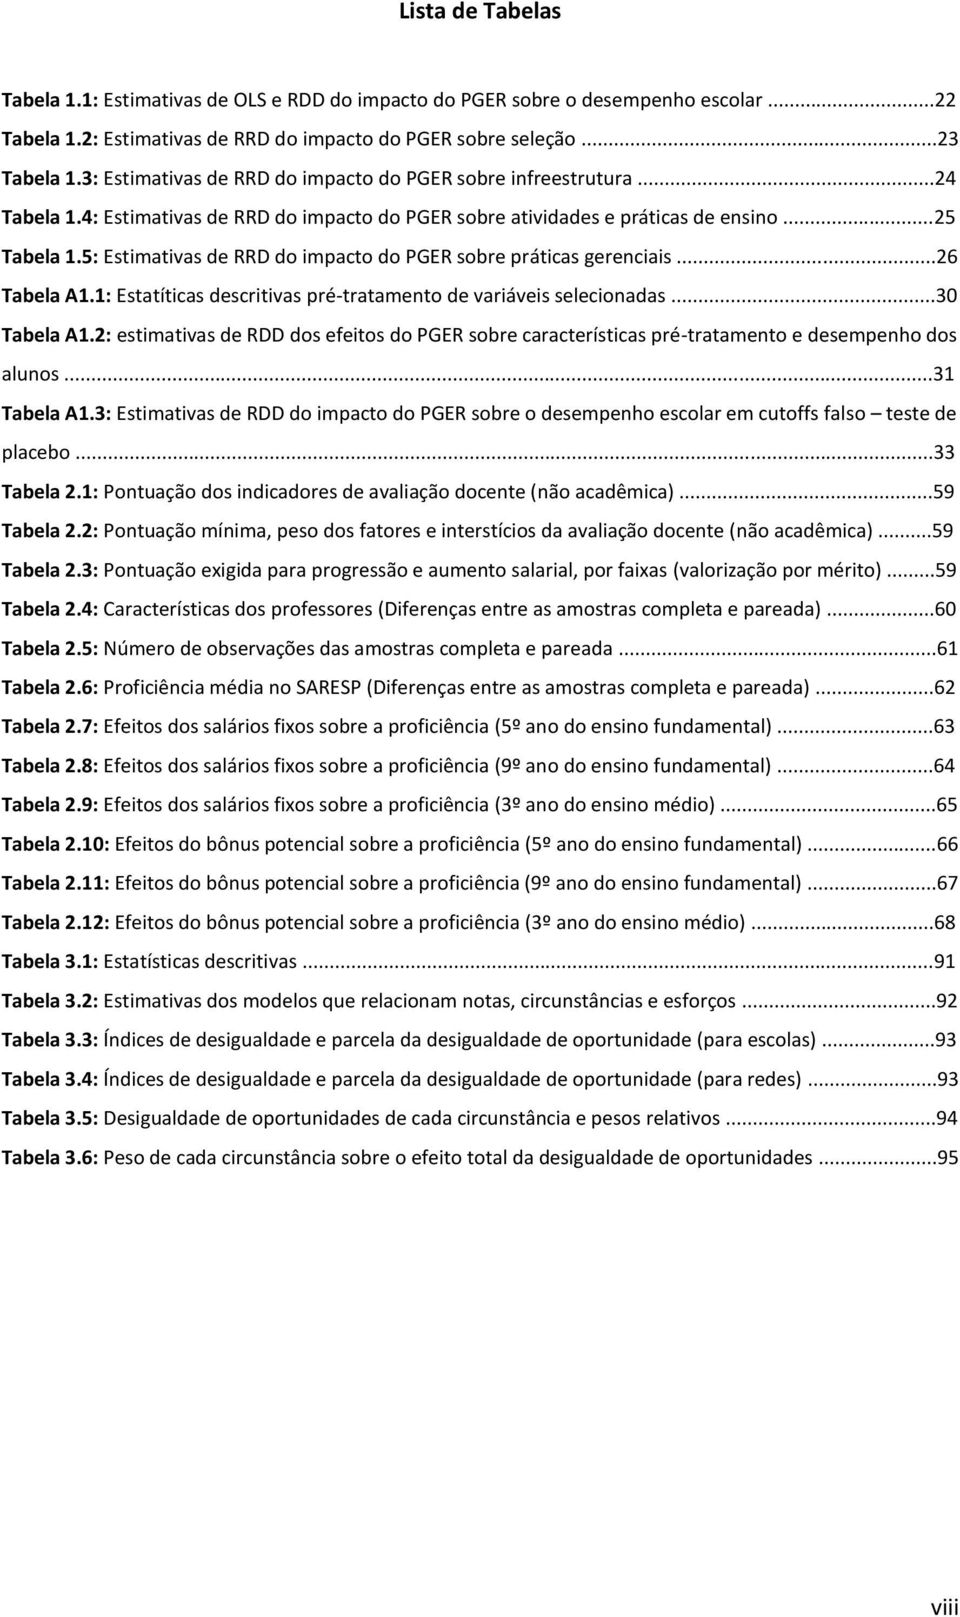 5: Estimativas de RRD do impacto do PGER sobre práticas gerenciais...26 Tabela A1.1: Estatíticas descritivas pré-tratamento de variáveis selecionadas...30 Tabela A1.